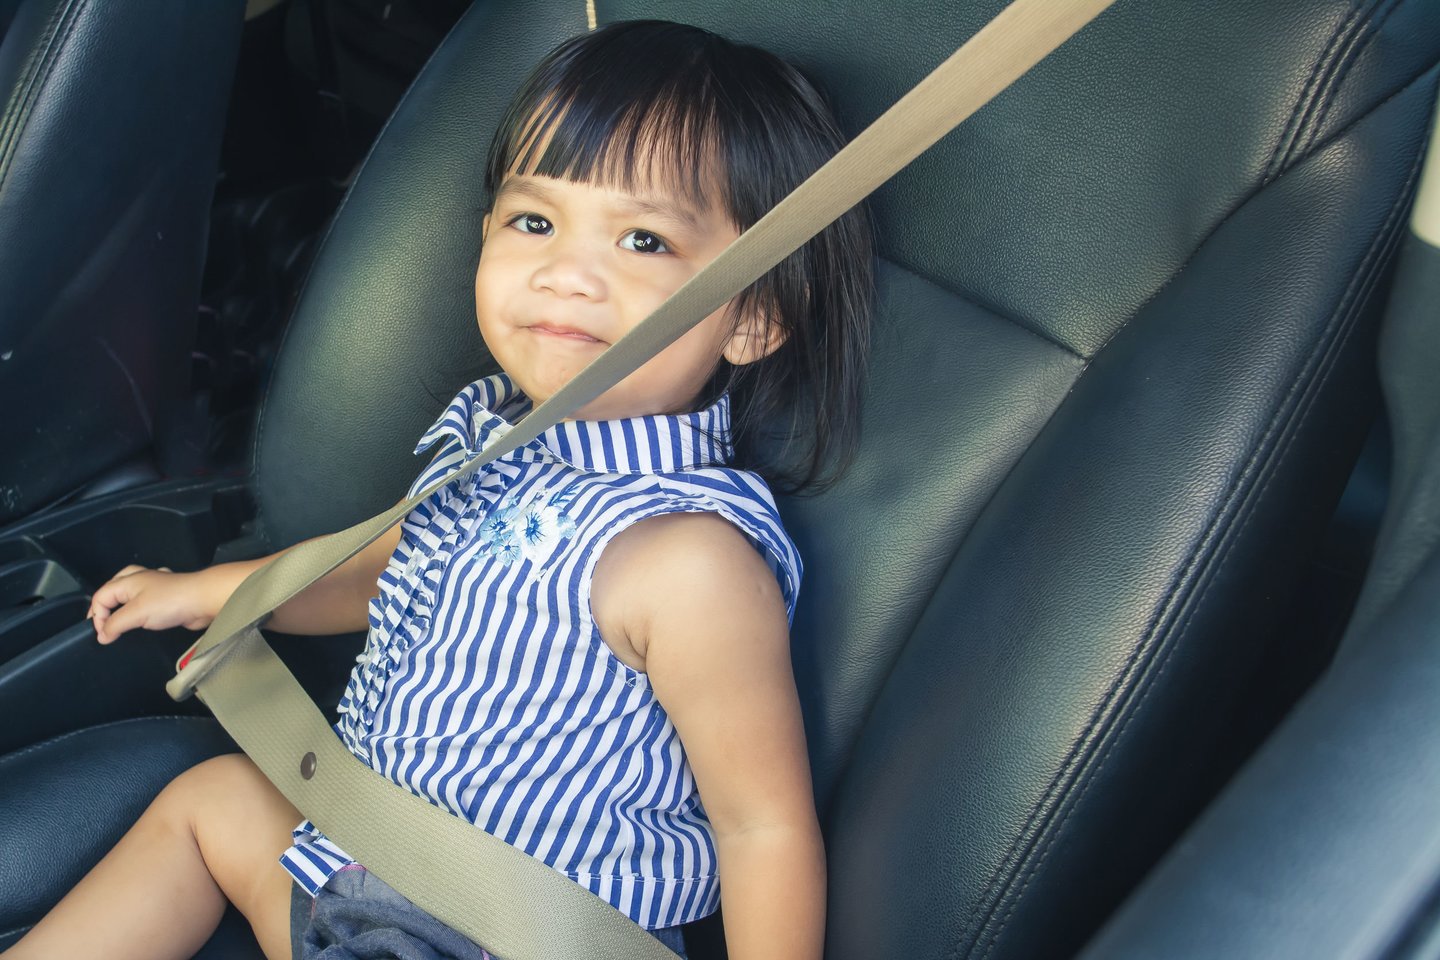   Vaikiškos kėdutės gali apsaugoti vaiką automobilyje, bet namie jų geriau nenaudoti.<br> 123RF.com nuotr.